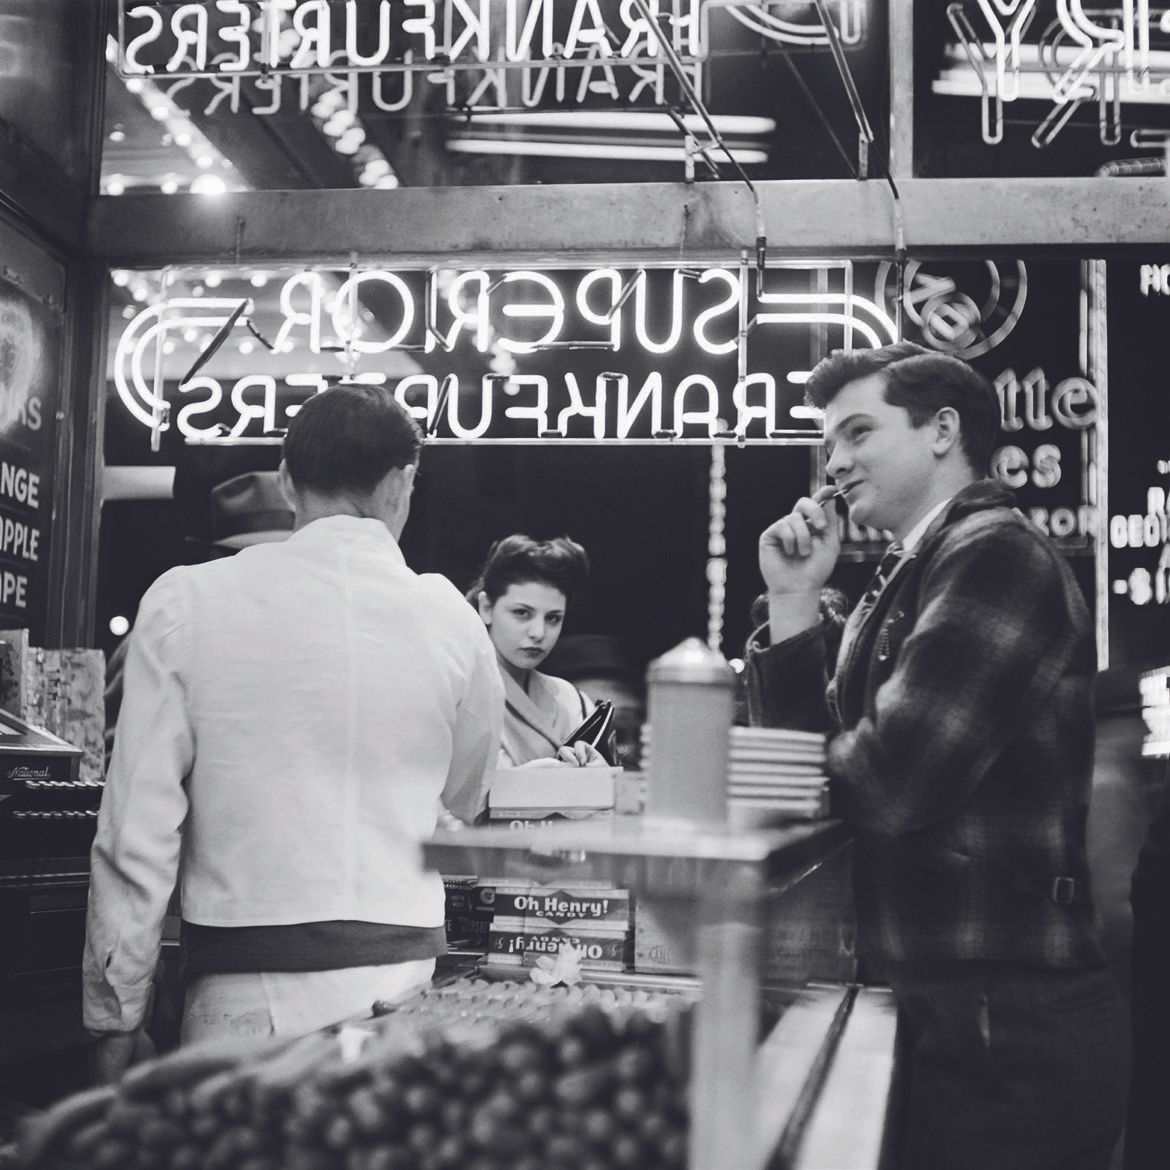 AFP - Eric SCHWAB AFP - Eric SCHWAB

In einer Milchbar am Broadway, März 1947,

&hellip;